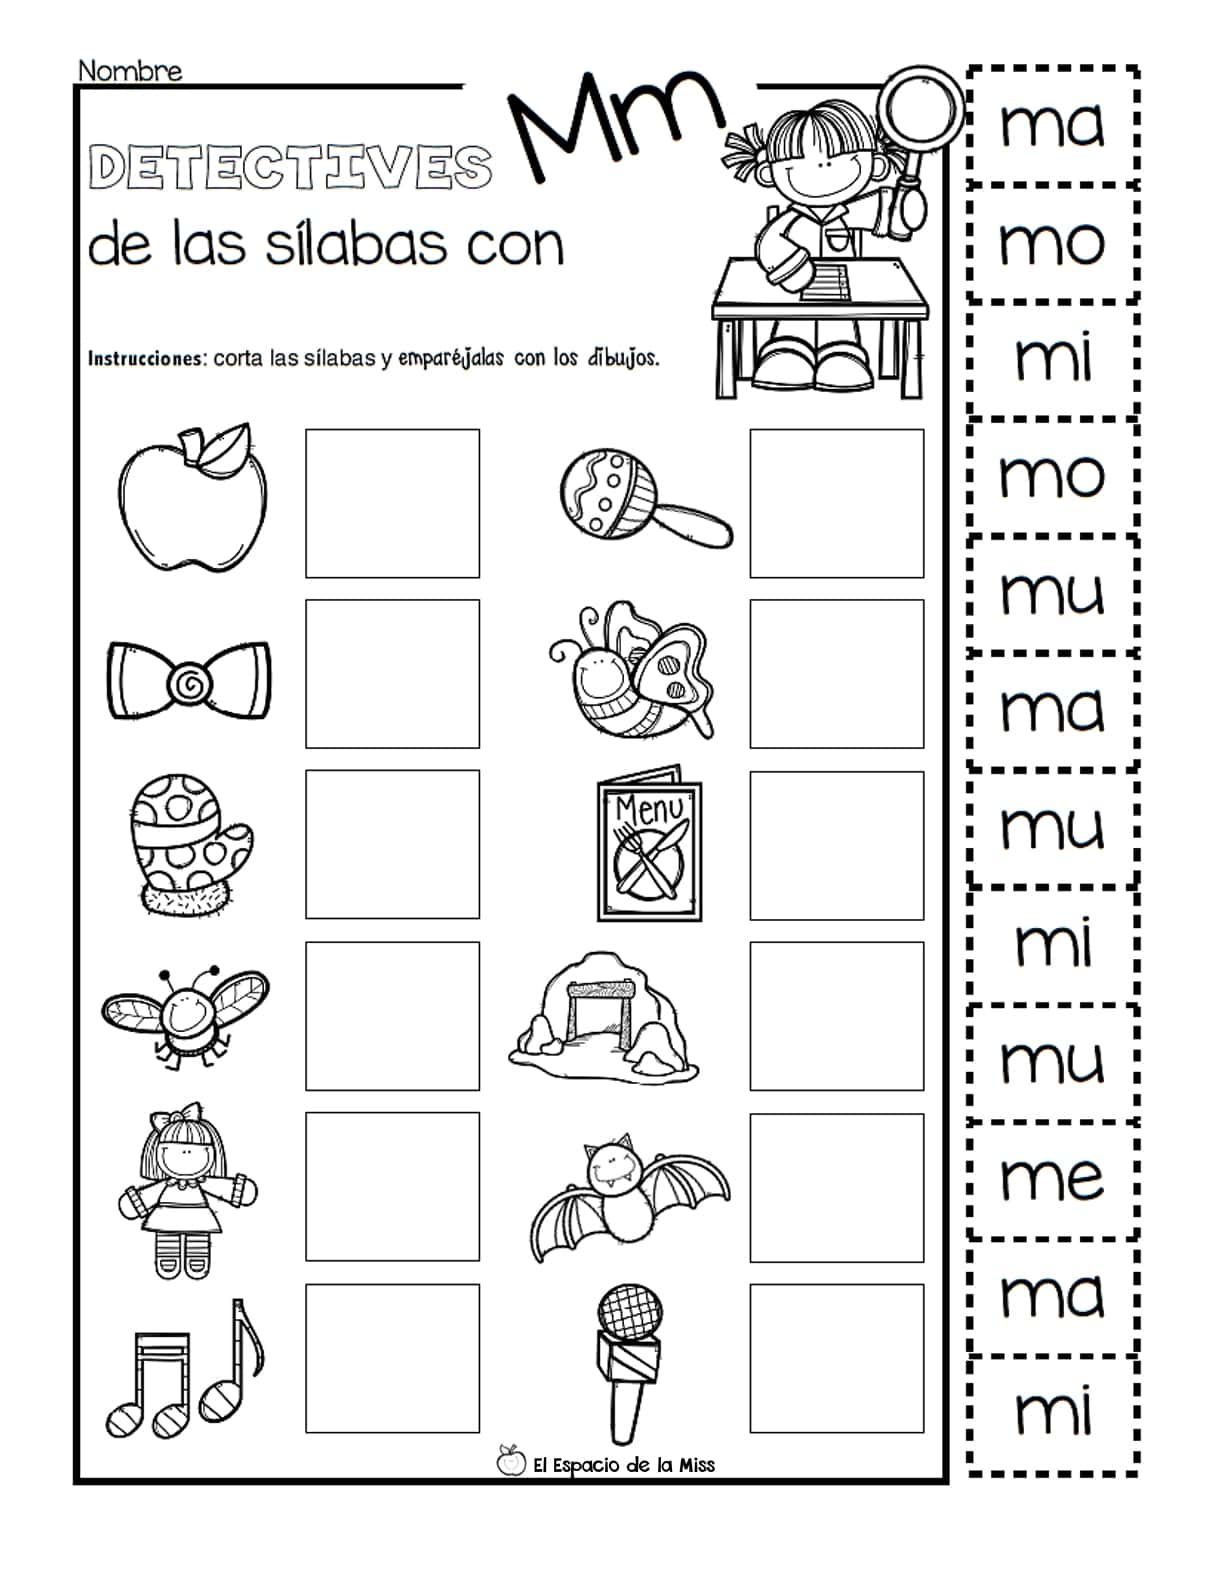 Actividades Con Las Silabas Ma Me Mi Mo Mu Para Imprimir Los Materiales Educativos